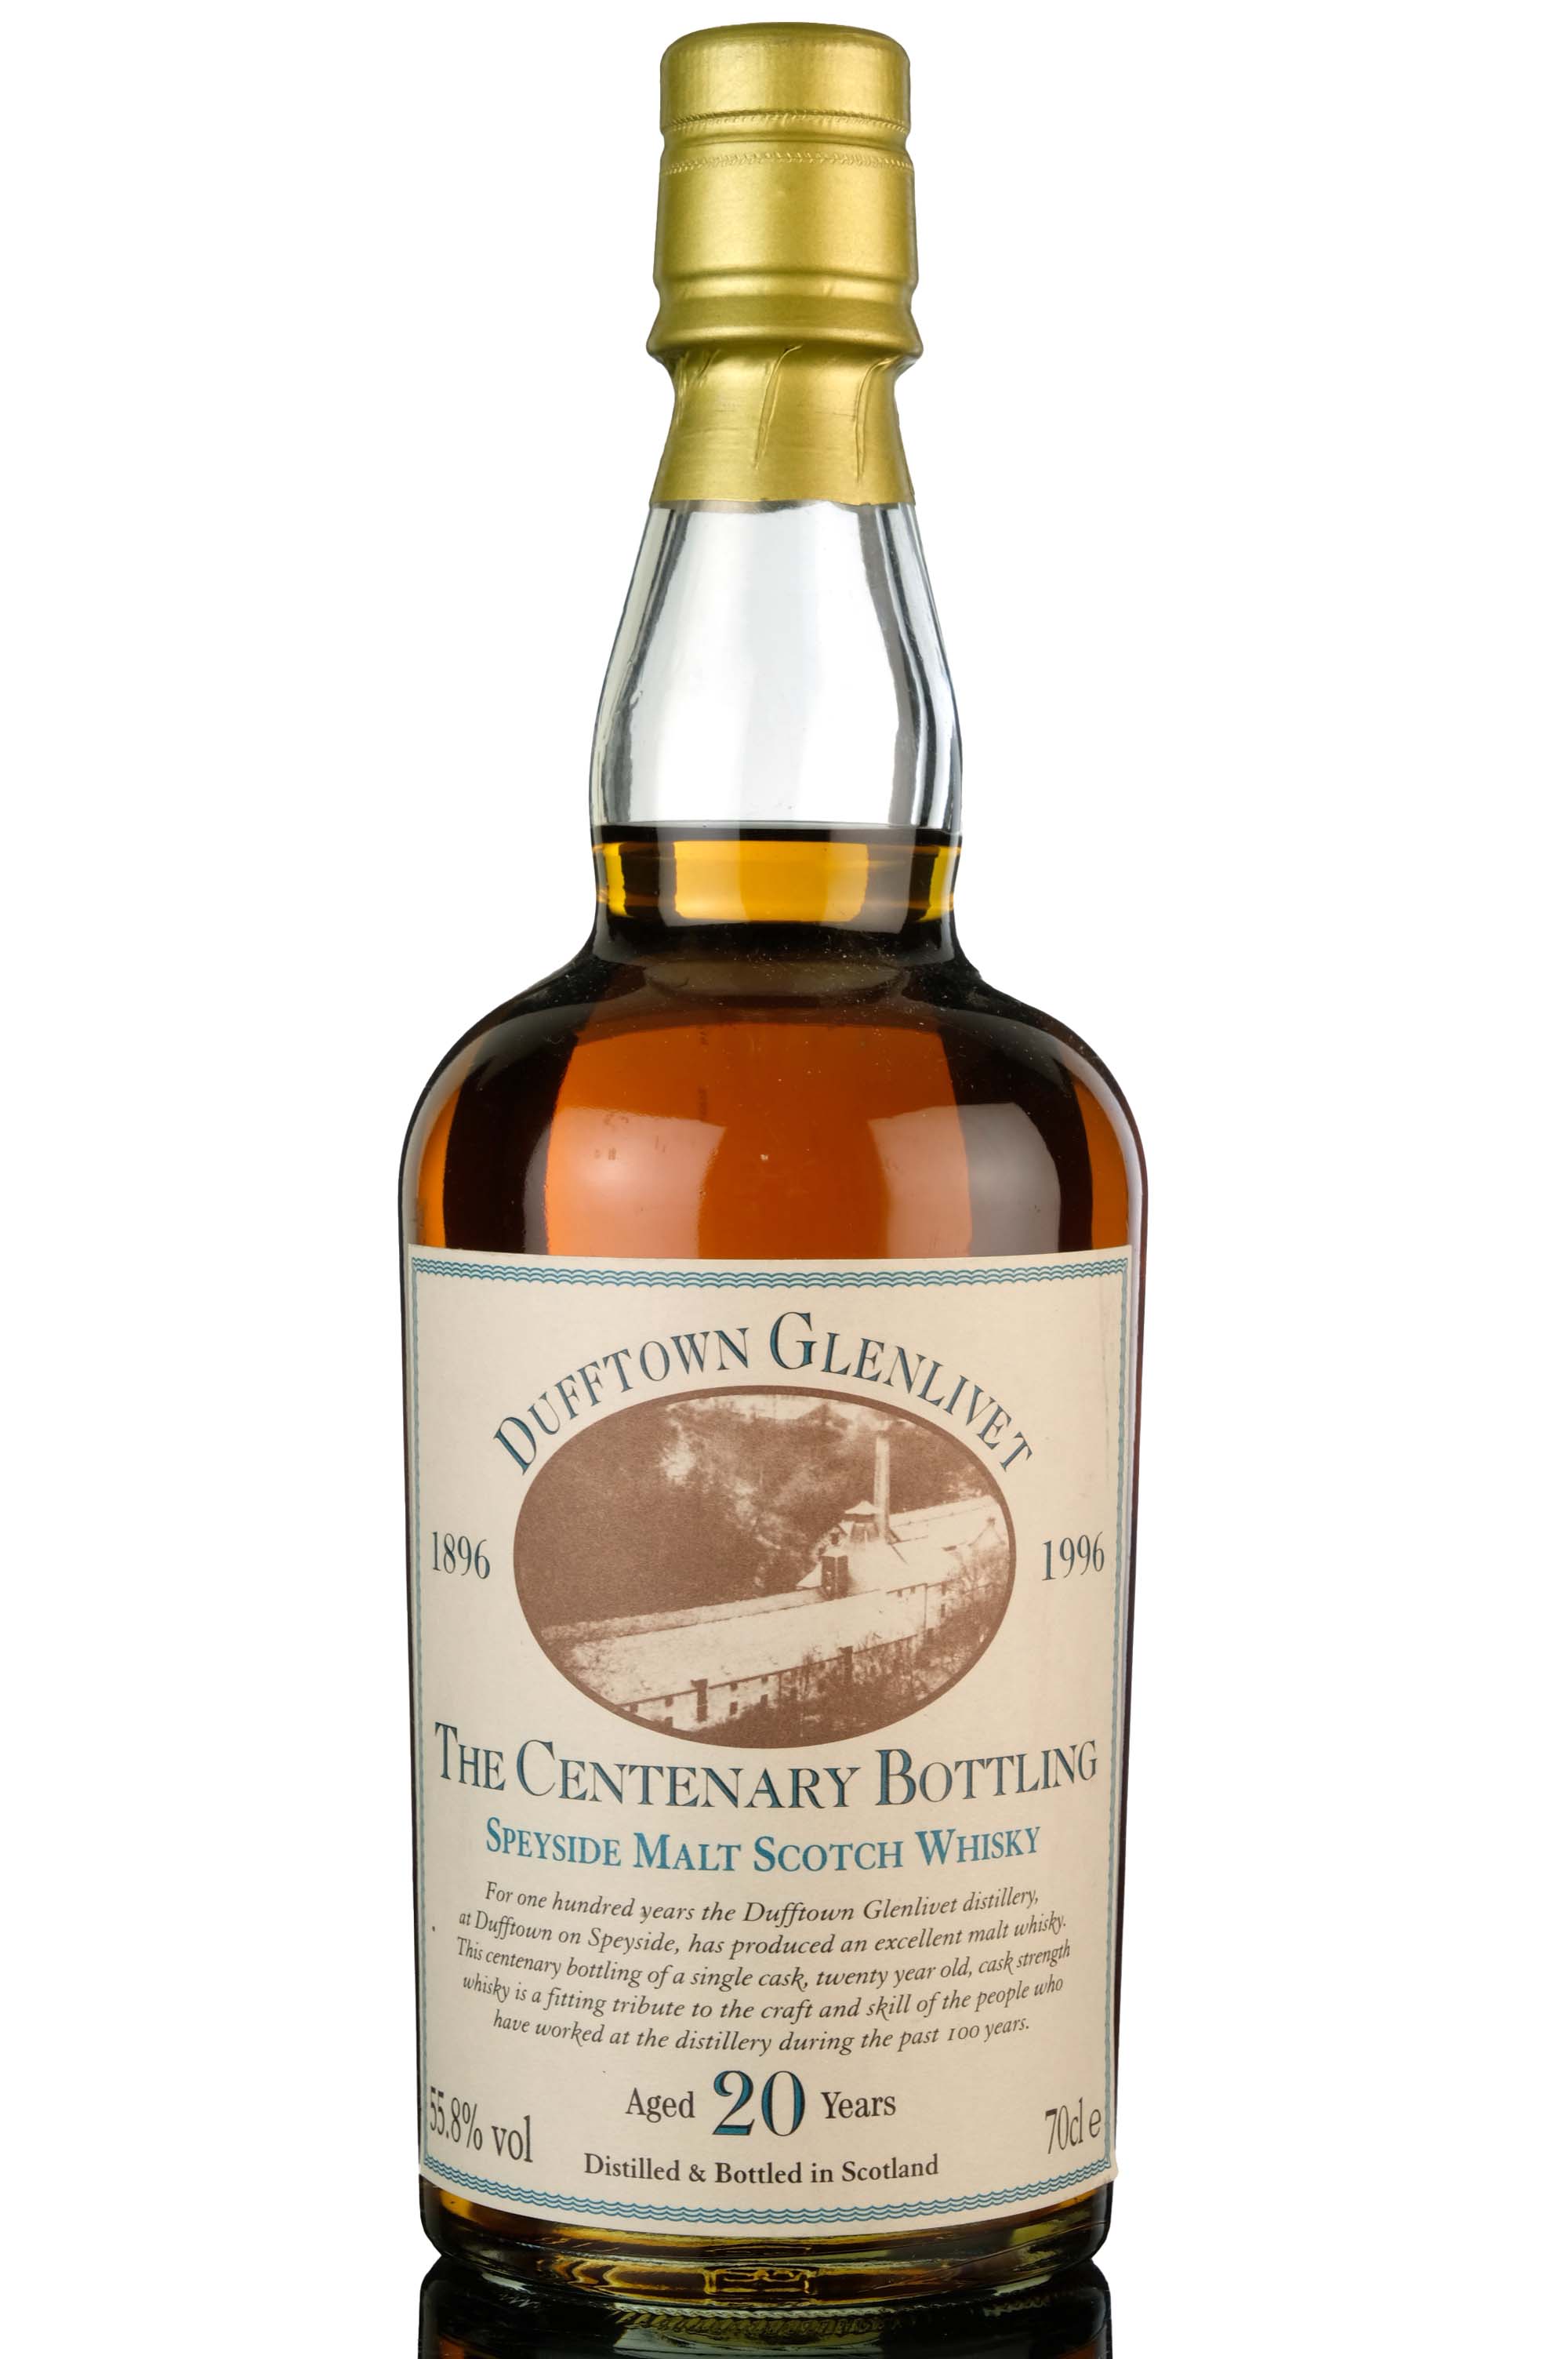 Dufftown-Glenlivet 20 Year Old - Centenary Bottling 1896-1996